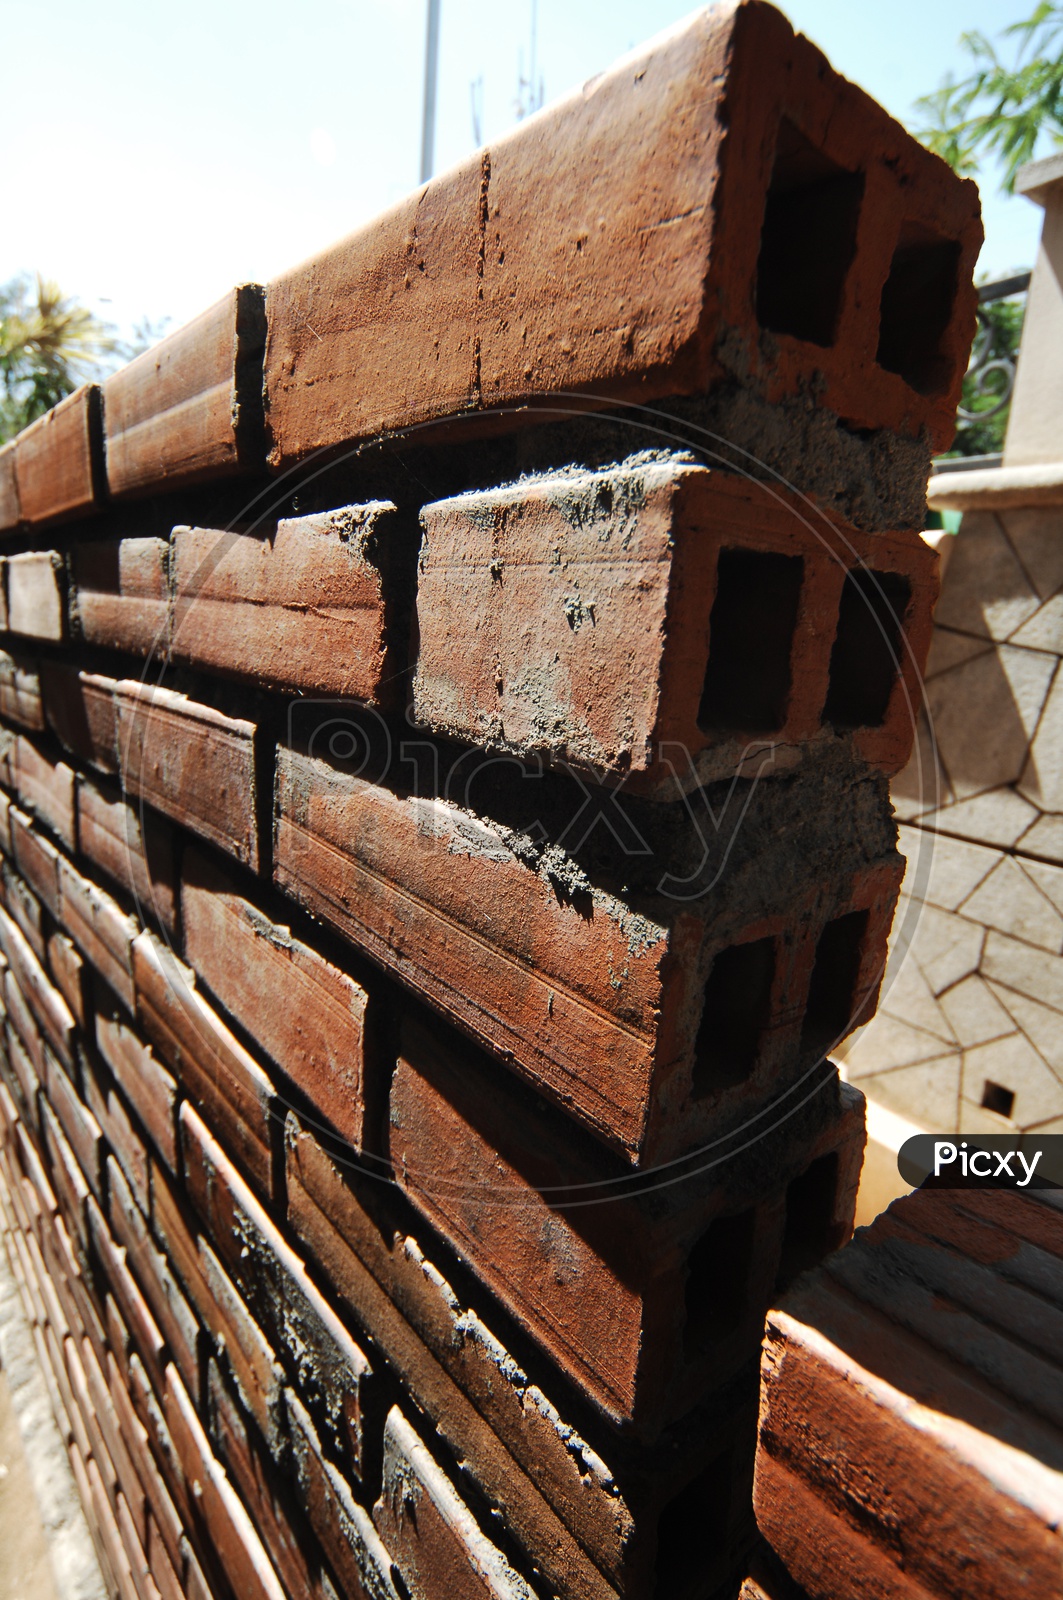 Abstract Brick Wall Texture